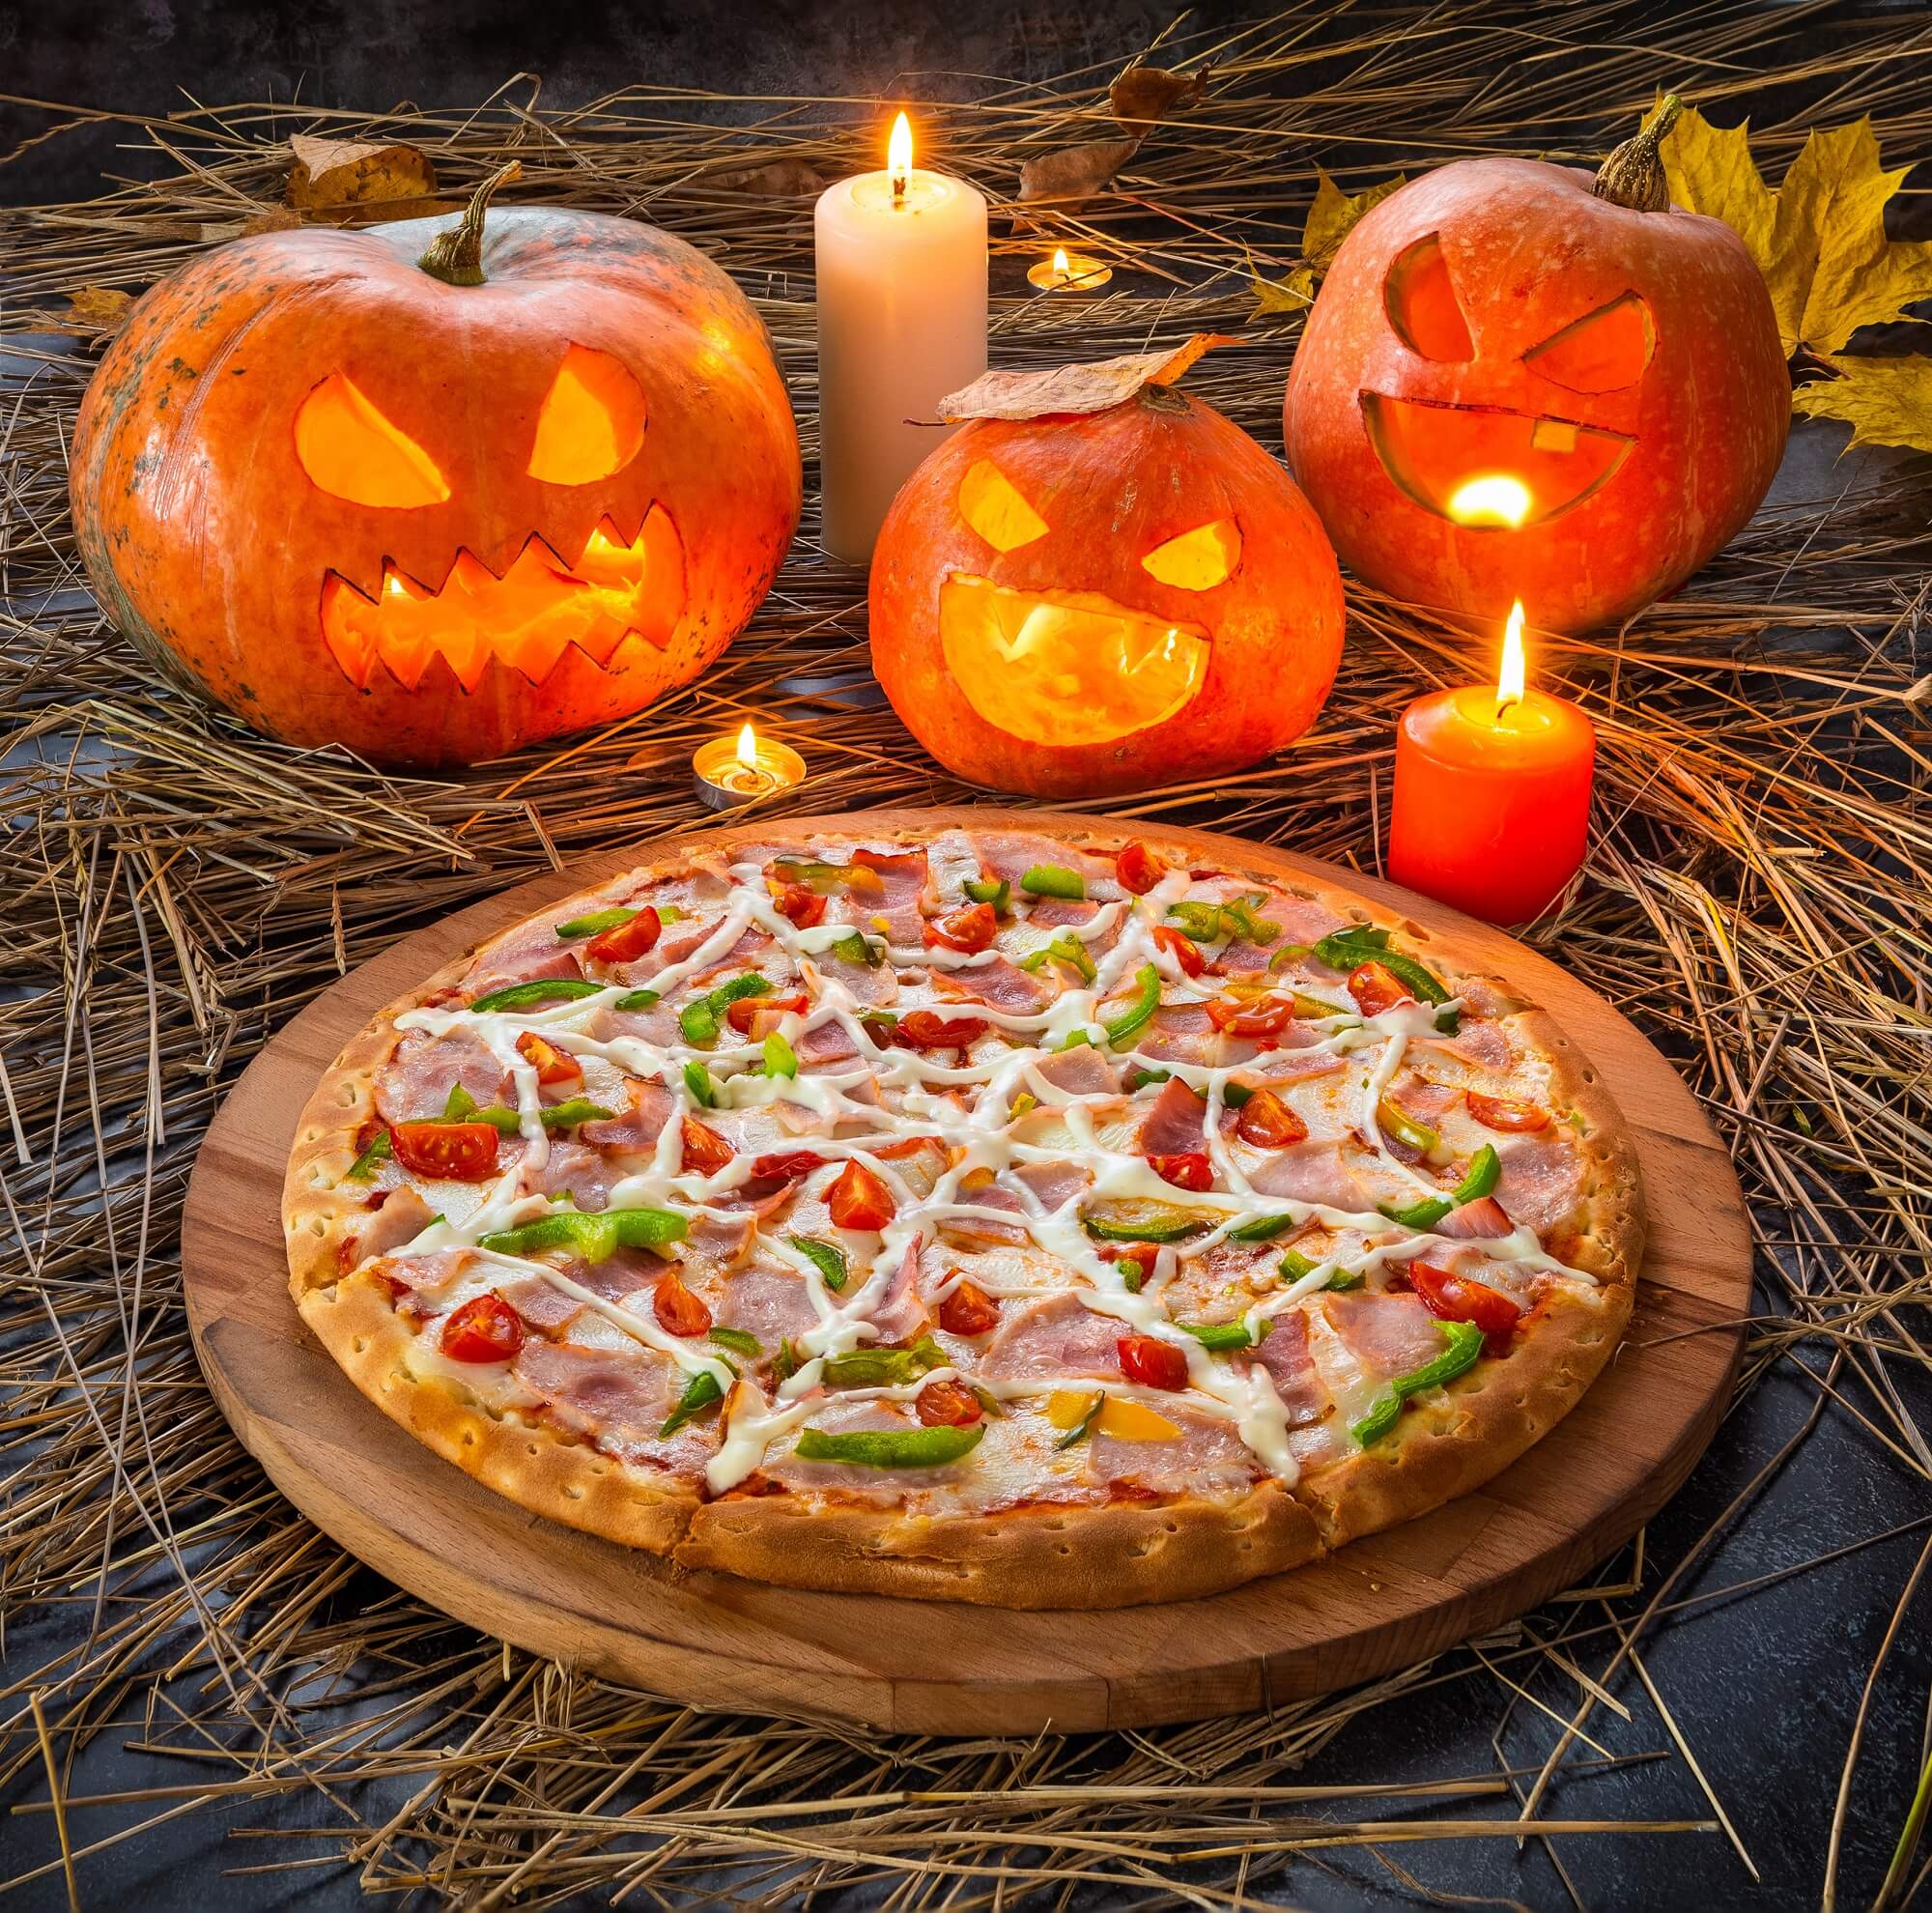 Halloween Pizza Ideas for the Spooky Season - Supreme Spiderweb Pizza